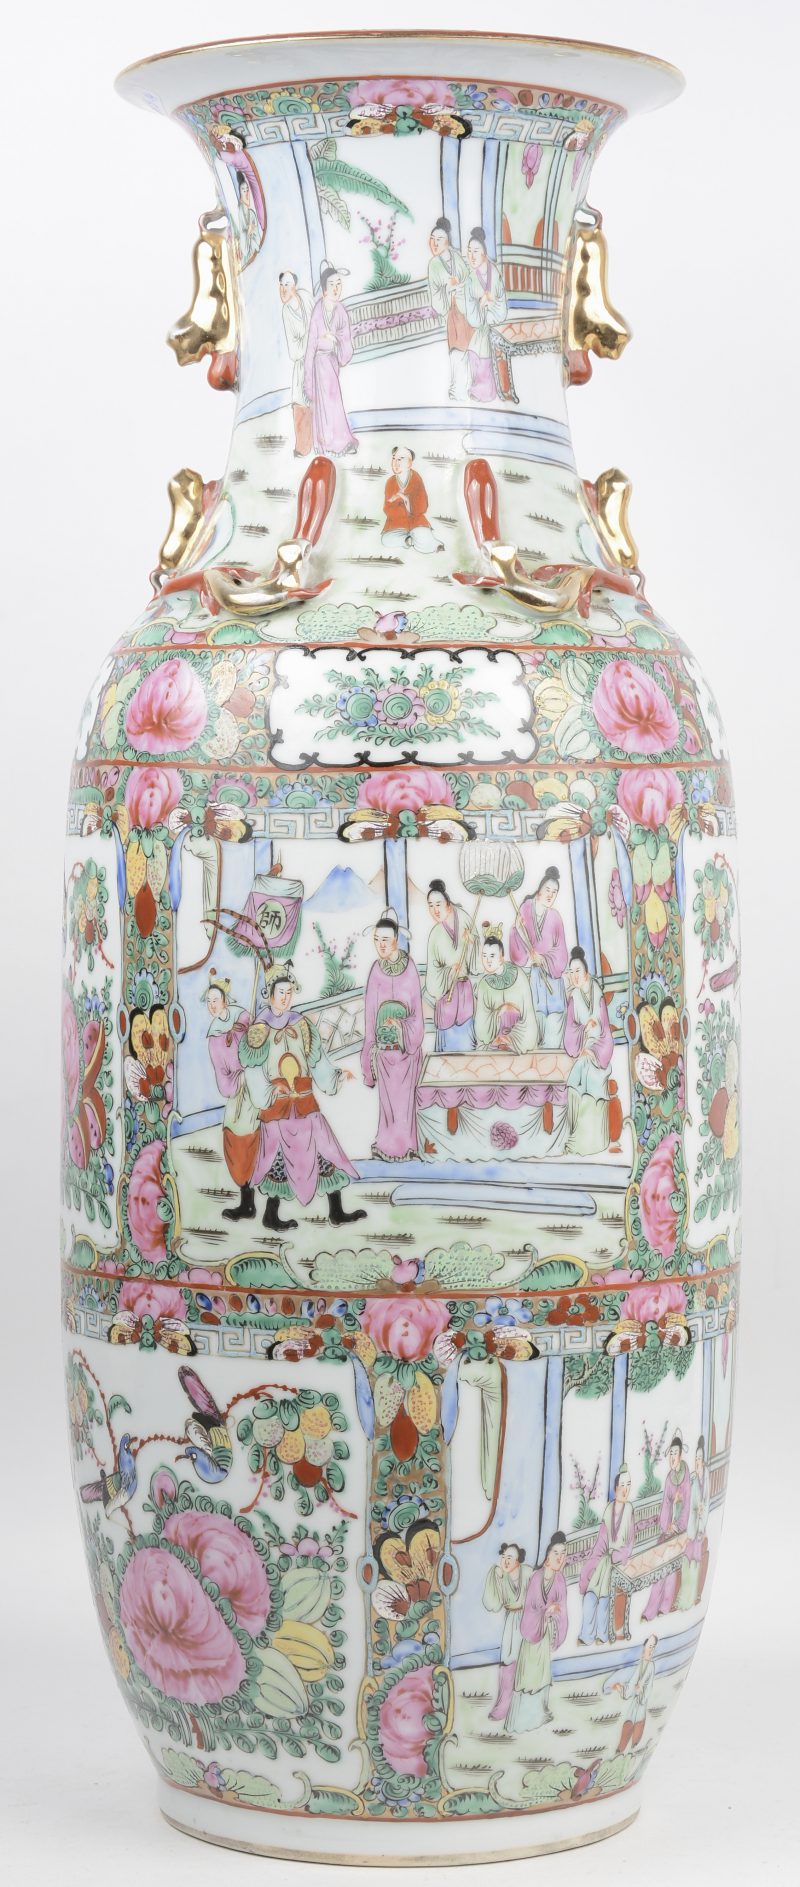 Een vaas van Cantonporselein met meerkleurig decor van personages, bloemen en vogels.